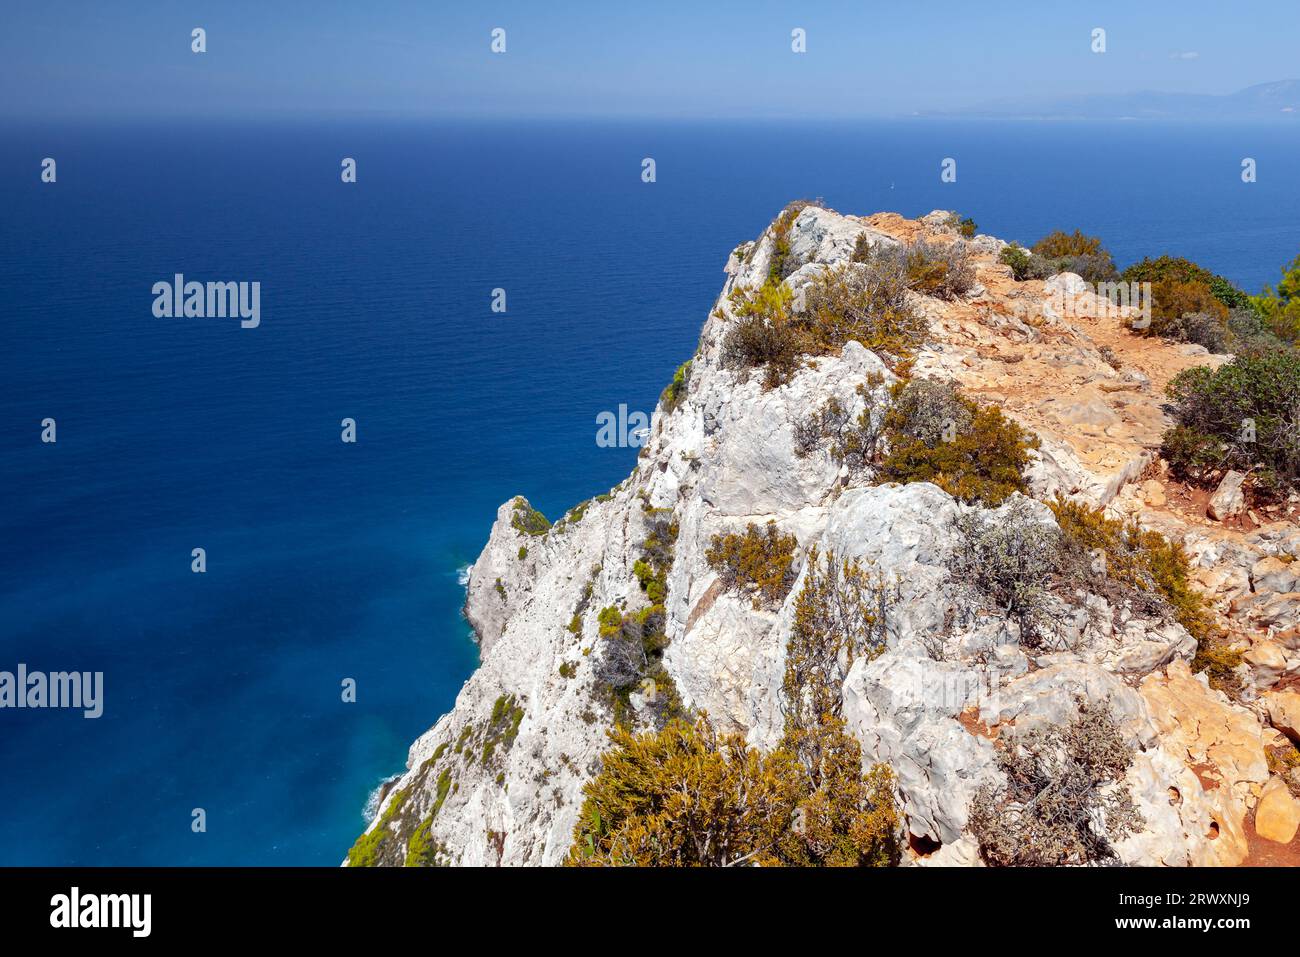 Küstenfelsen, Landschaftsfoto der Bucht von Navagio, Griechenland. Natürliches Wahrzeichen der griechischen Insel Zakynthos Stockfoto